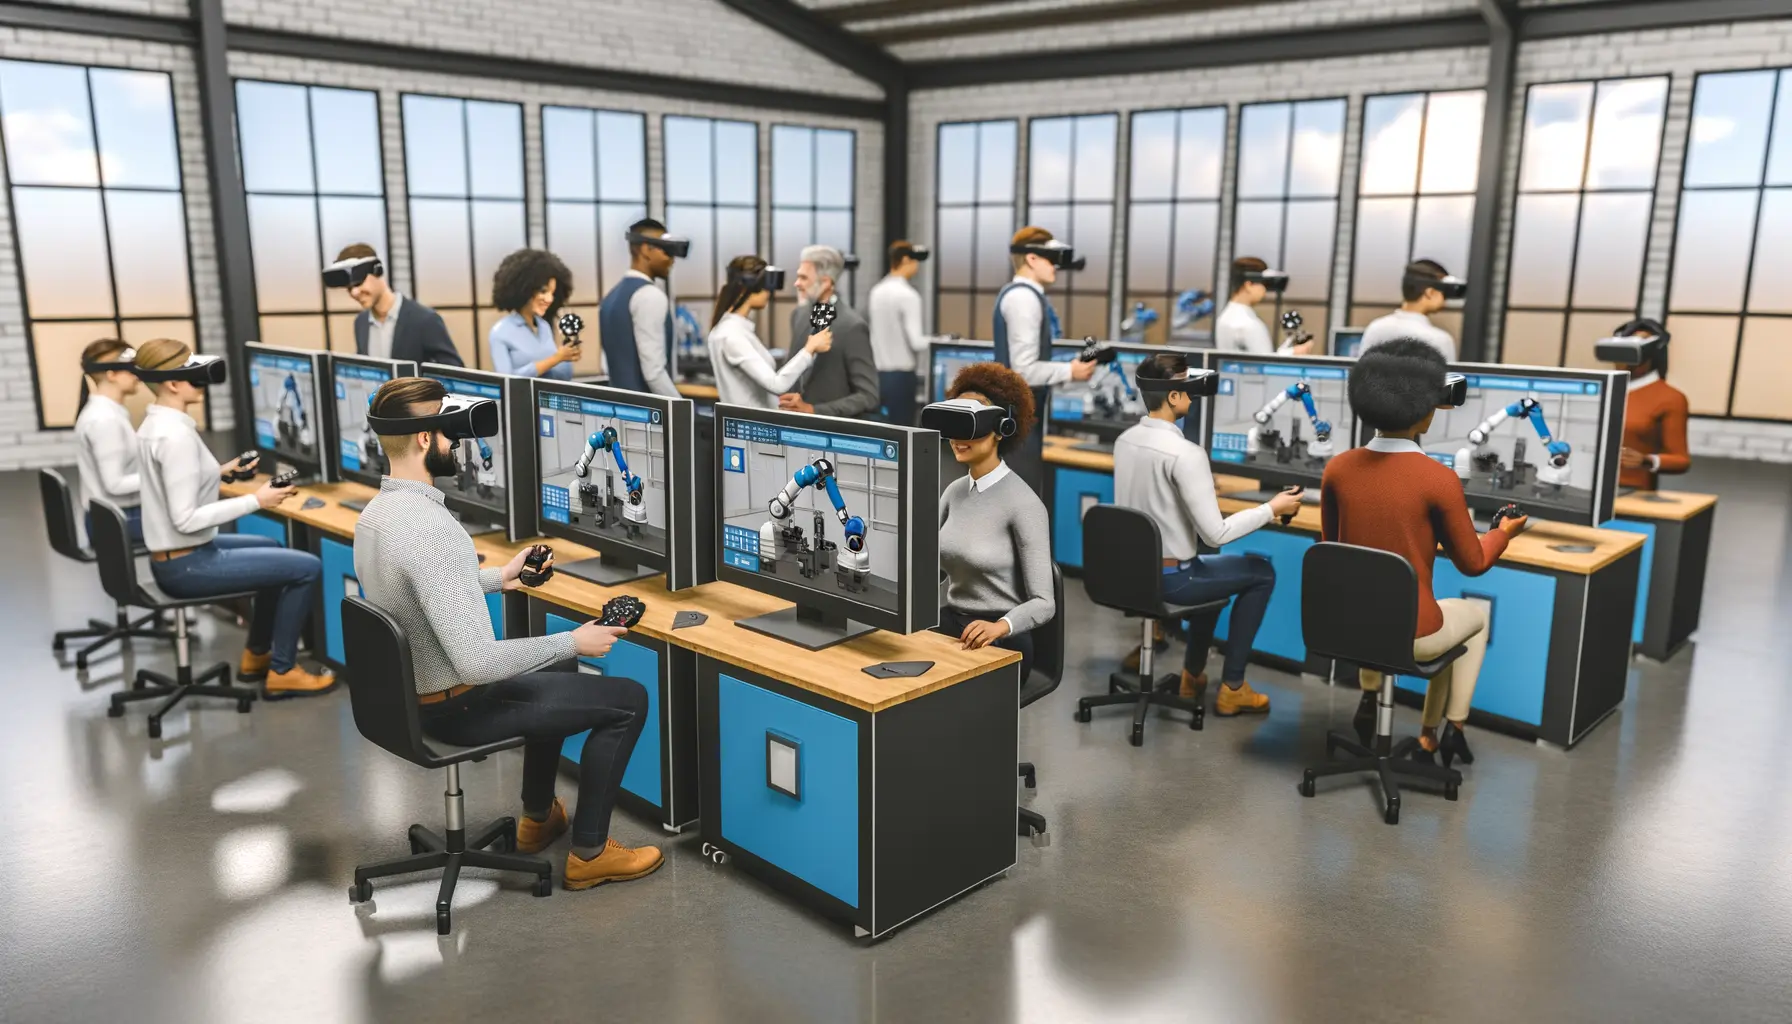 Interaktive Schulung in einem modernen Schulungszentrum mit virtuellen Cobots.